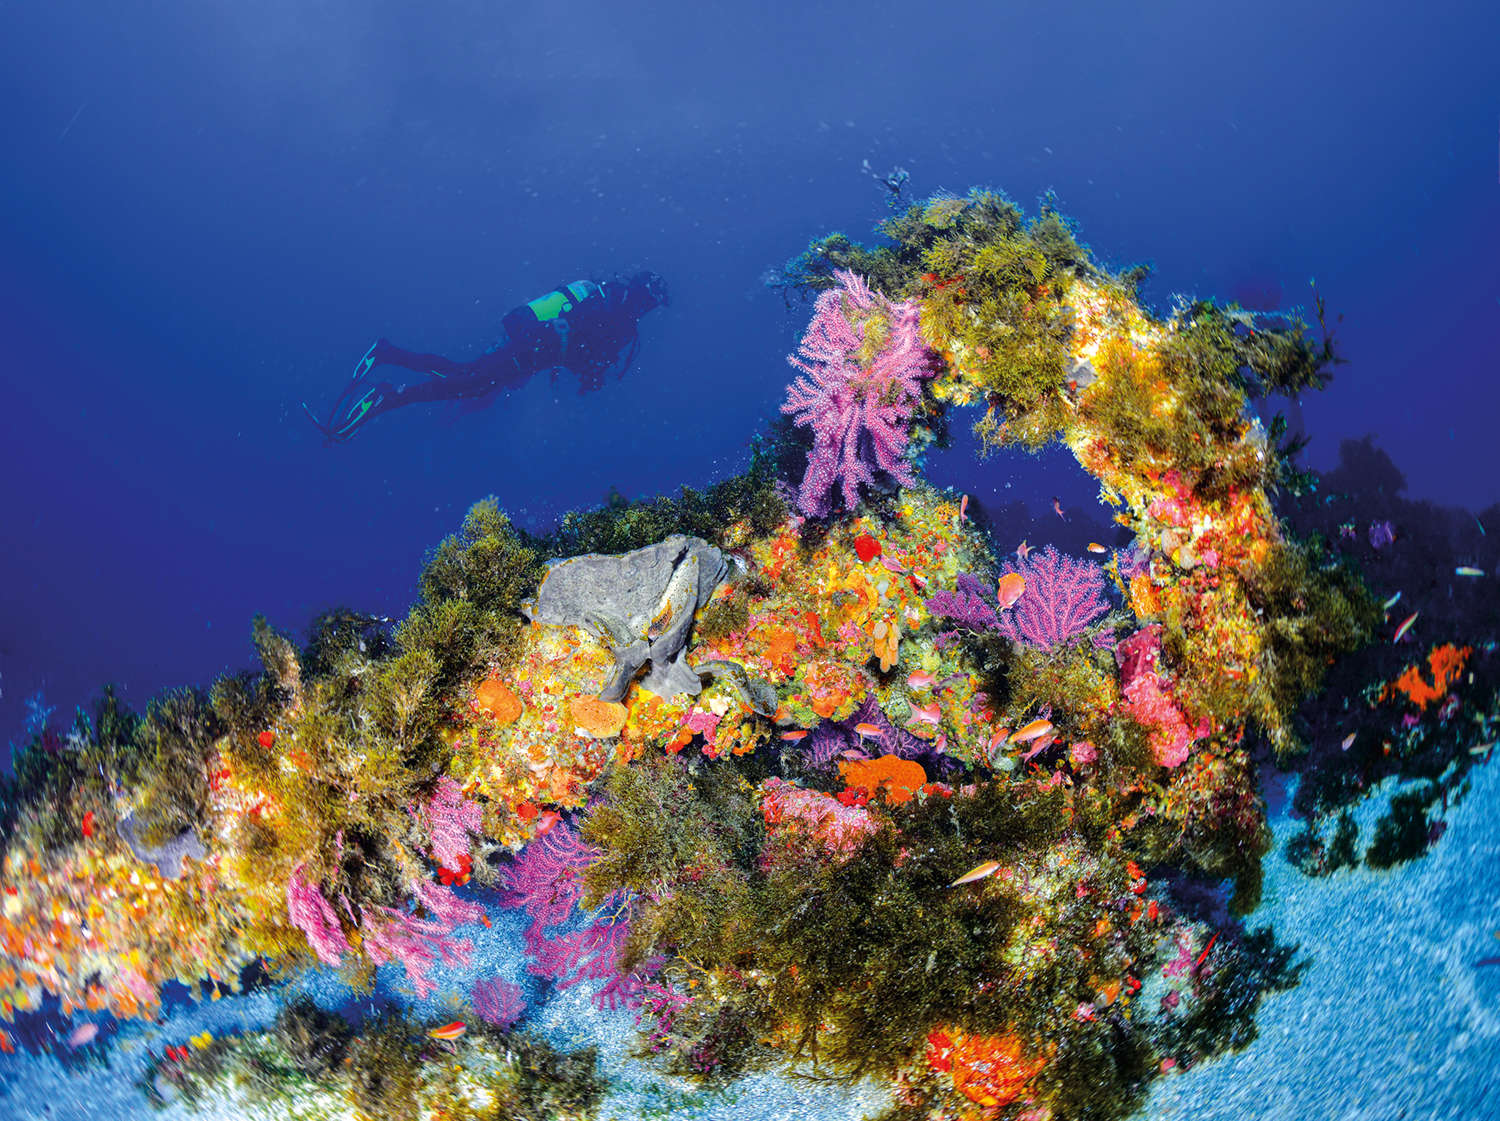 Esponjas y corales tapizan un ancla